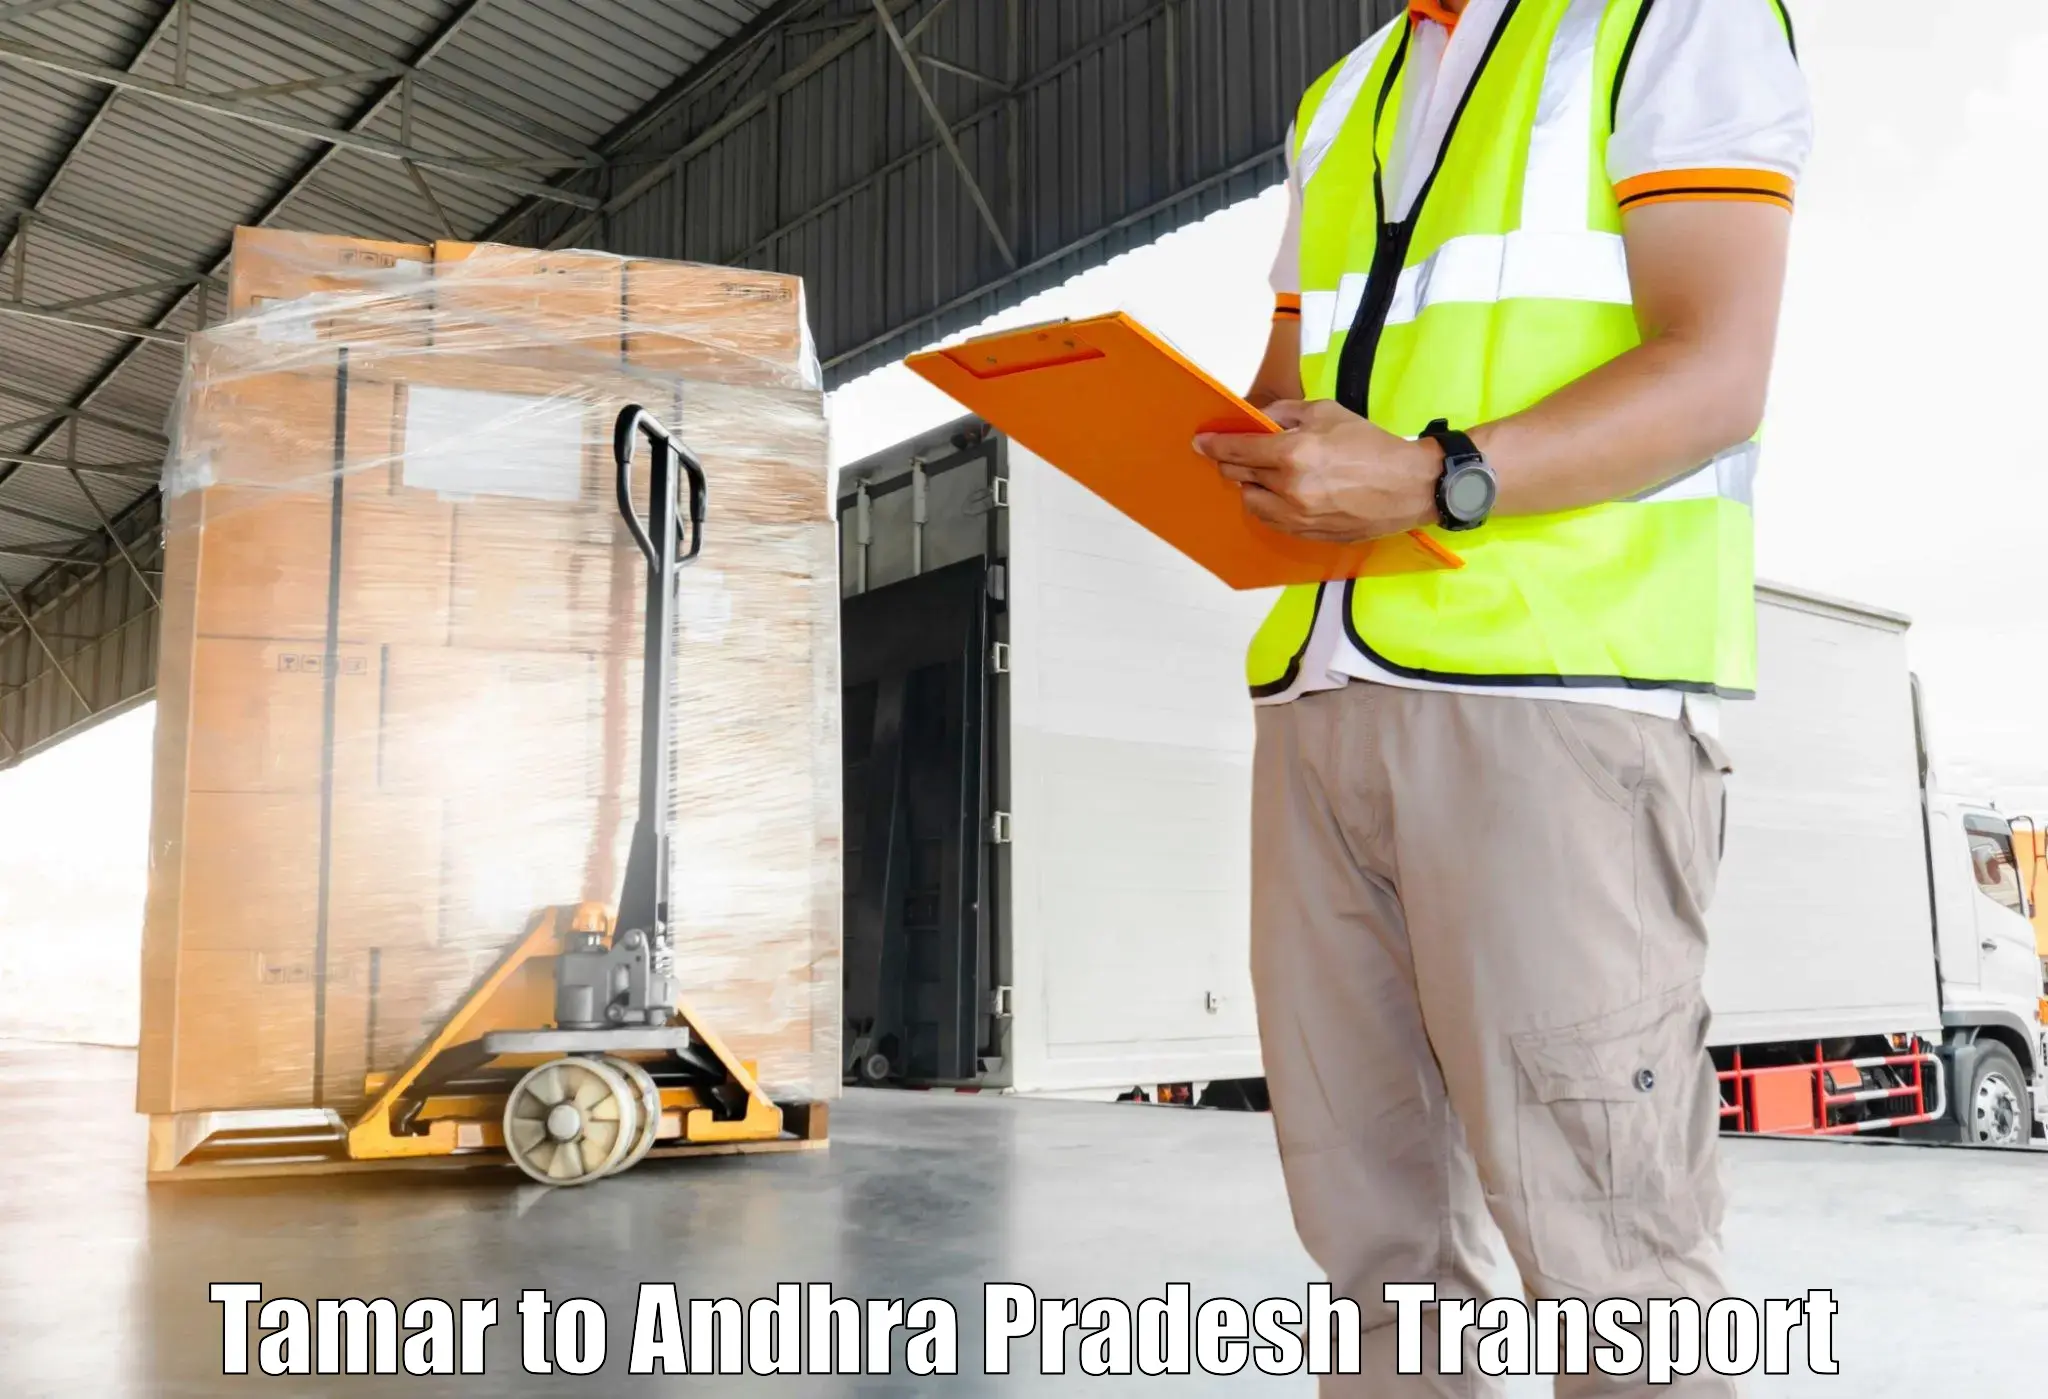 Furniture transport service Tamar to Pakala